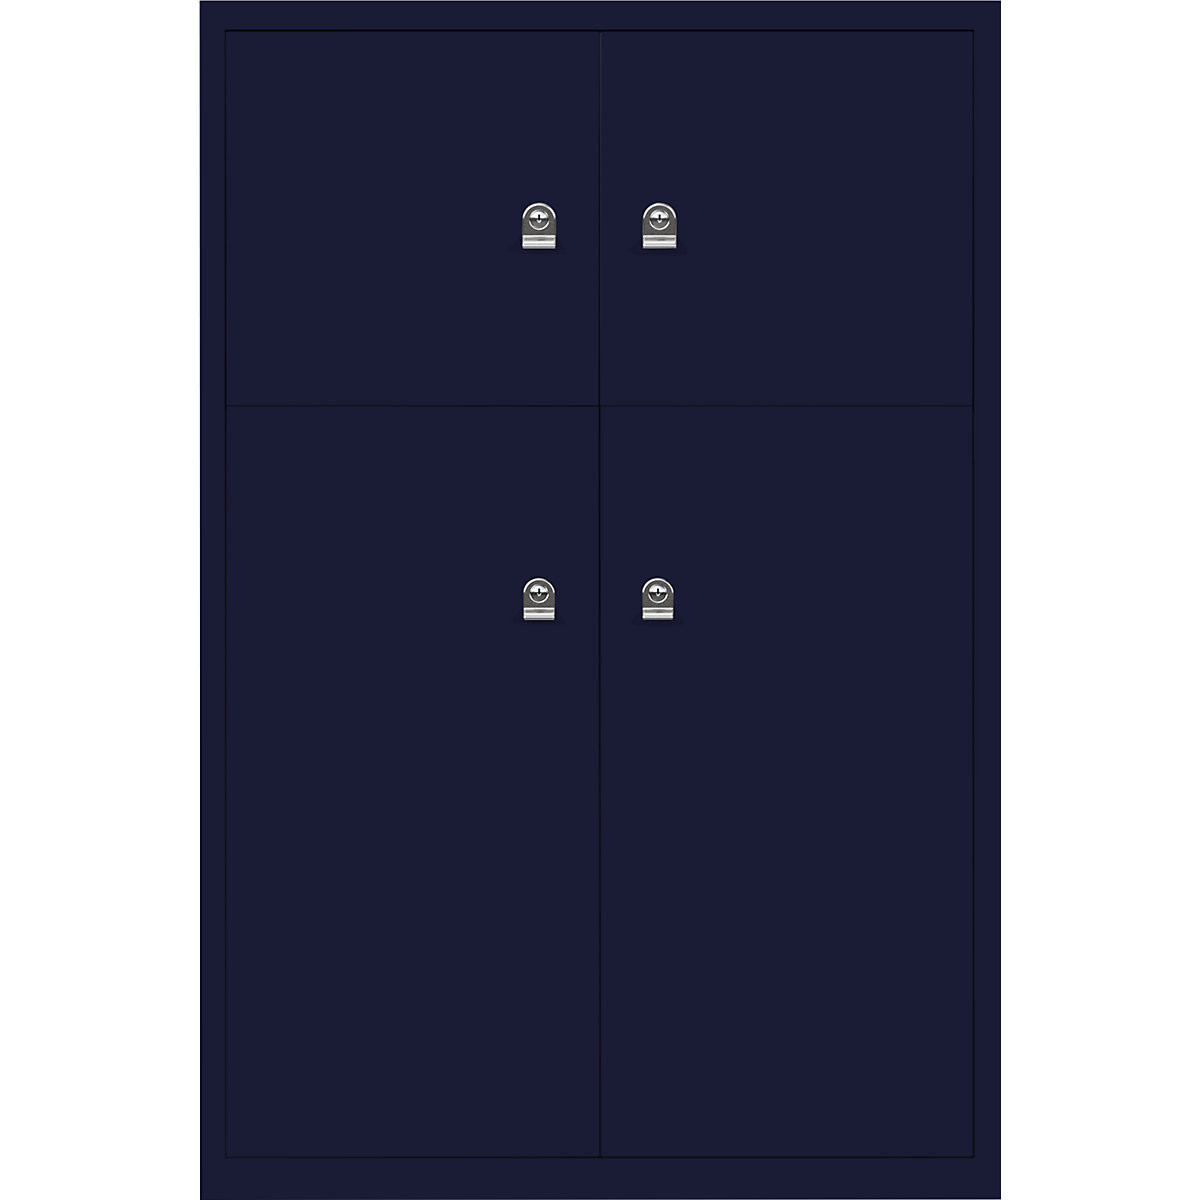 Ormar LateralFile™ Lodge – BISLEY, s 4 pretinca sa zaključavanjem, visina 2 x 375 mm, 2 x 755 mm, u oxford plavoj boji-31